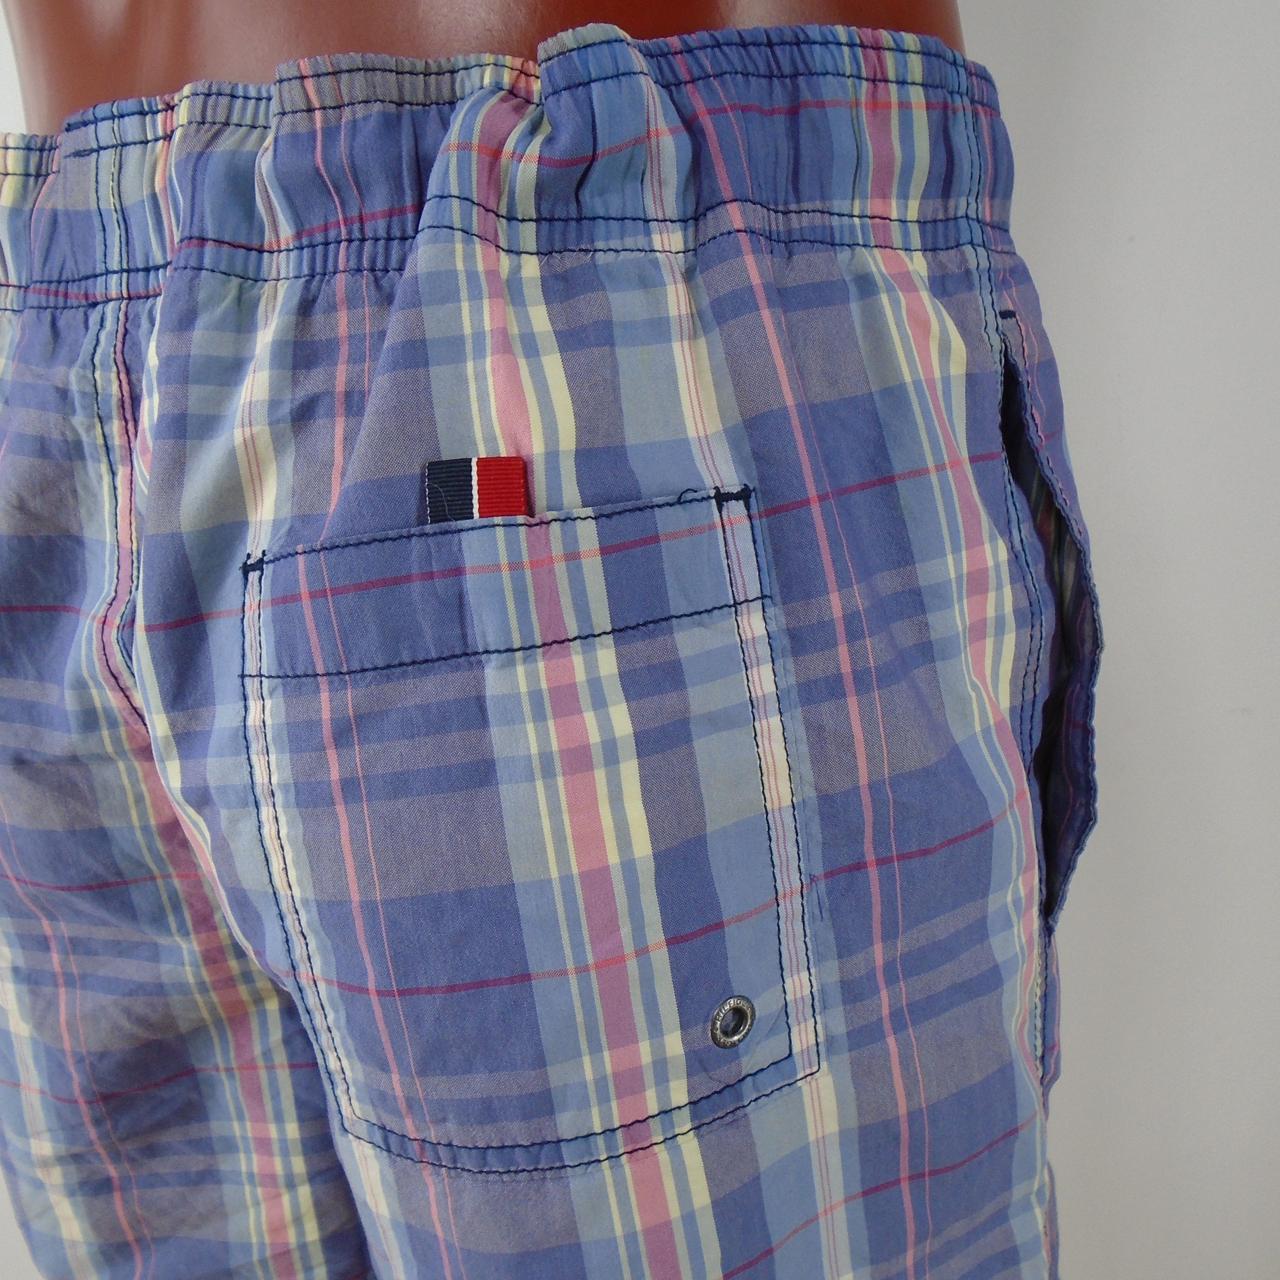 Pantalones cortos de hombre Tommy Hilfiger. Azul oscuro. M.Usado. Muy bien